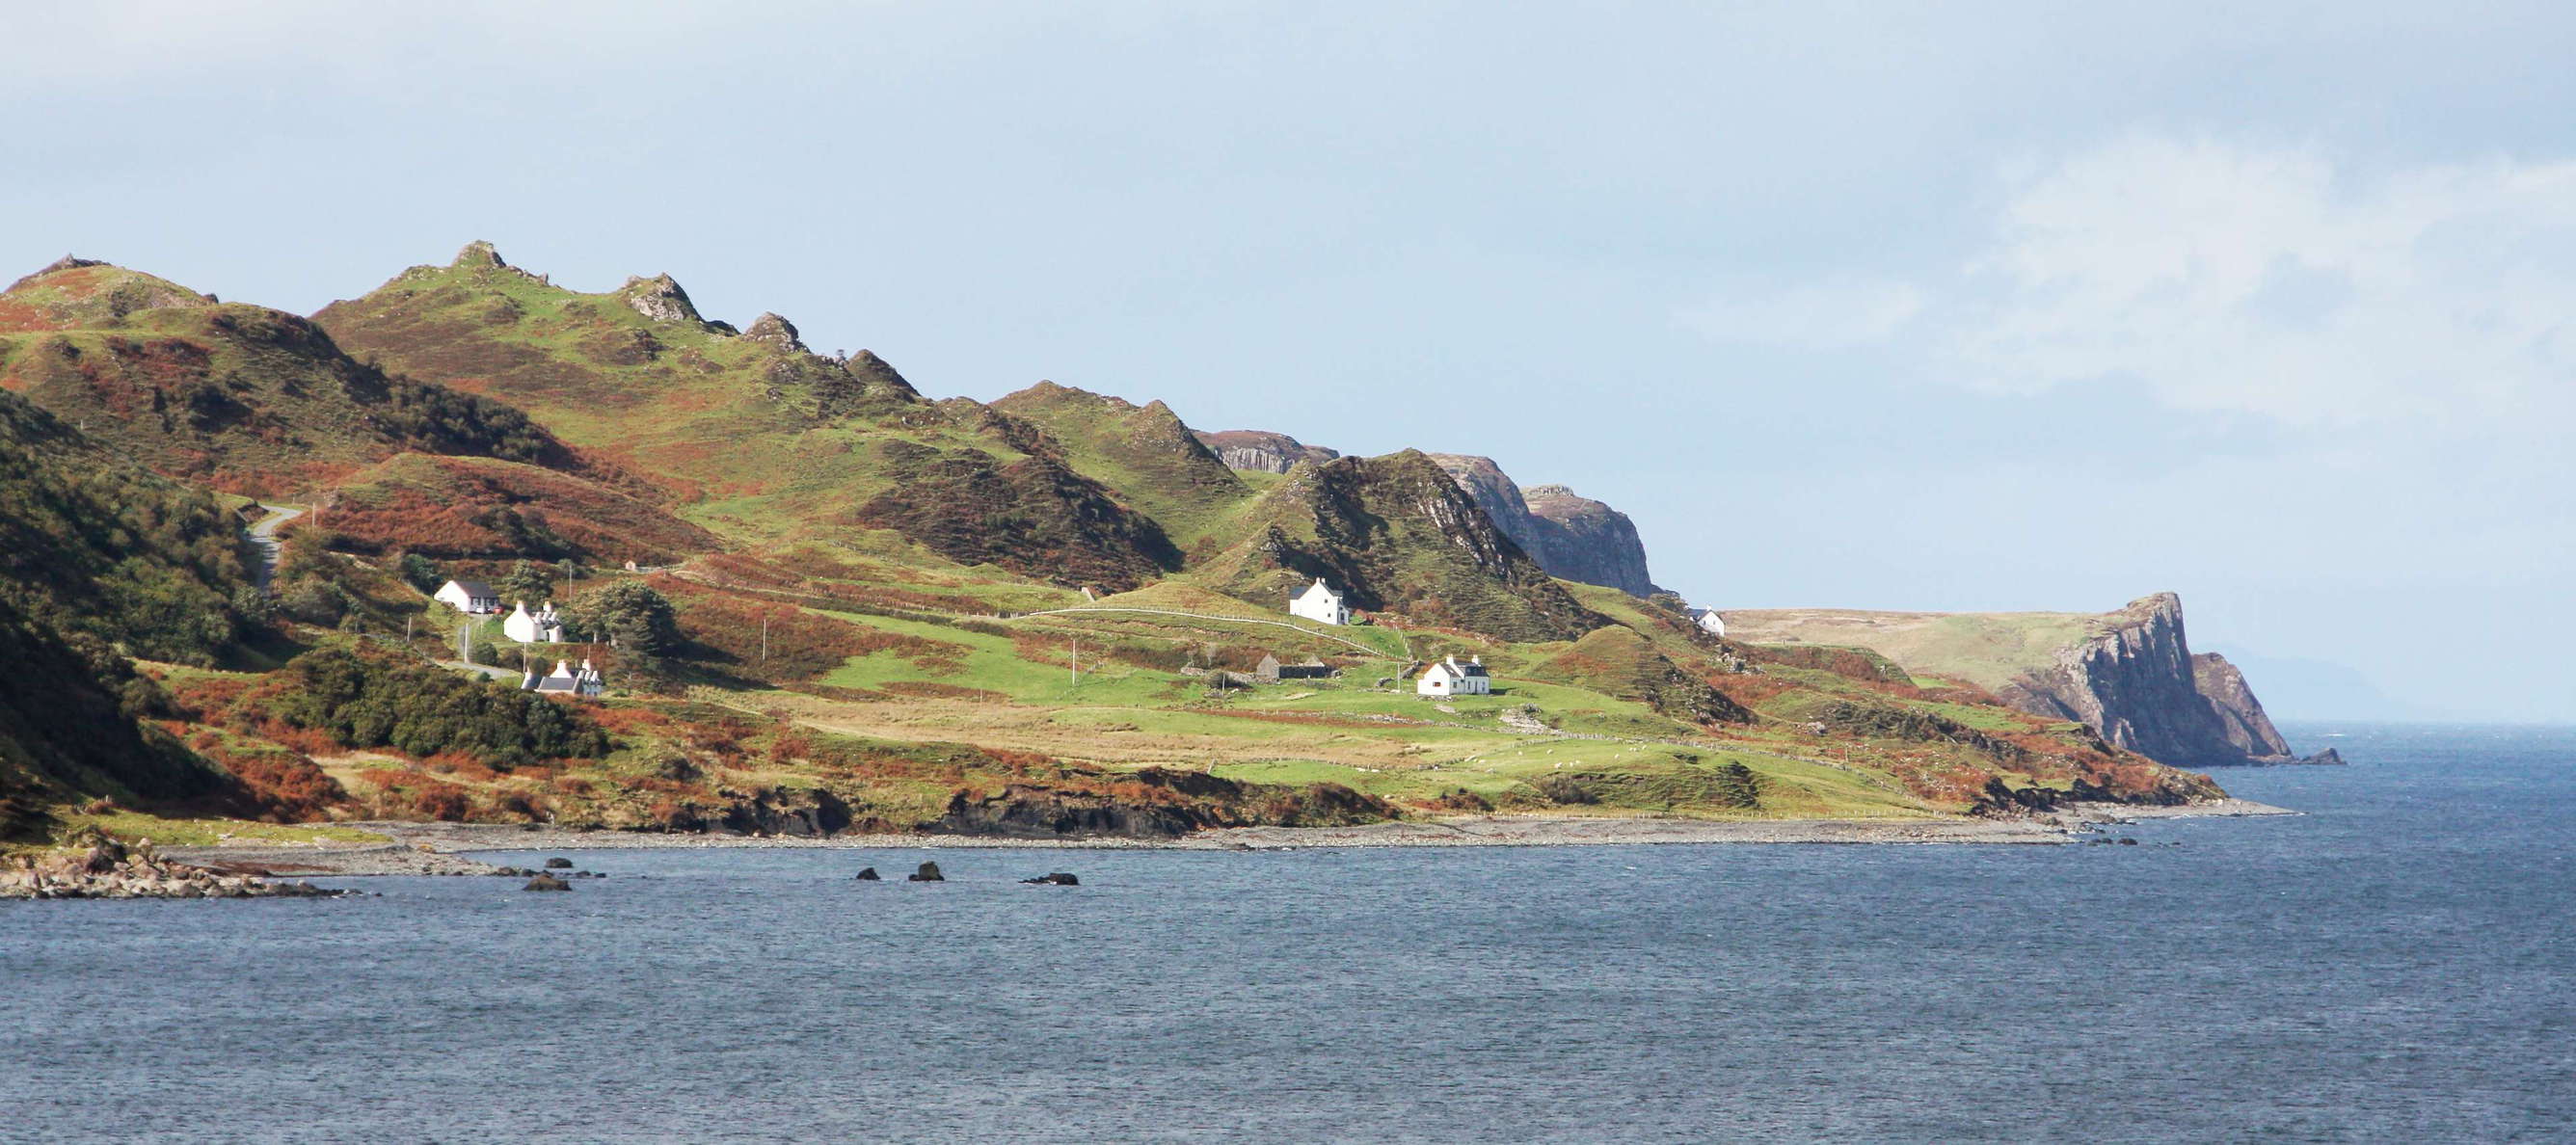 Isle of Skye  |  Quiraing